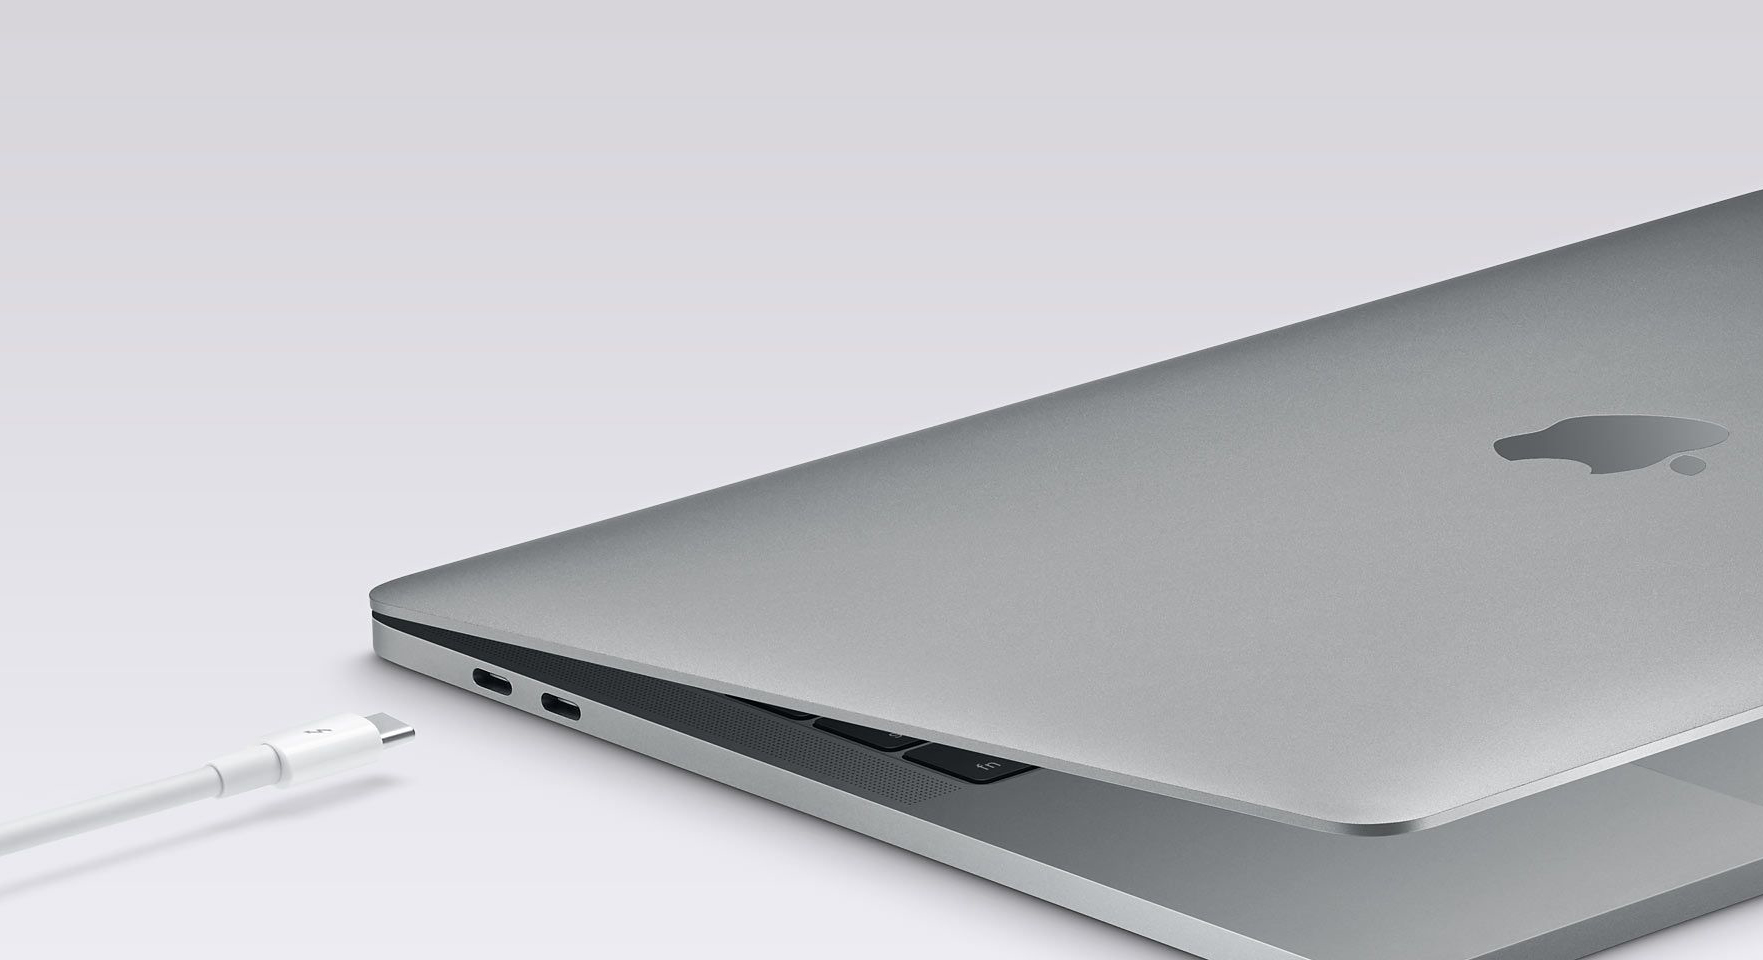 MacBook Pro 2016 accessori USB Type C e monitor in sconto